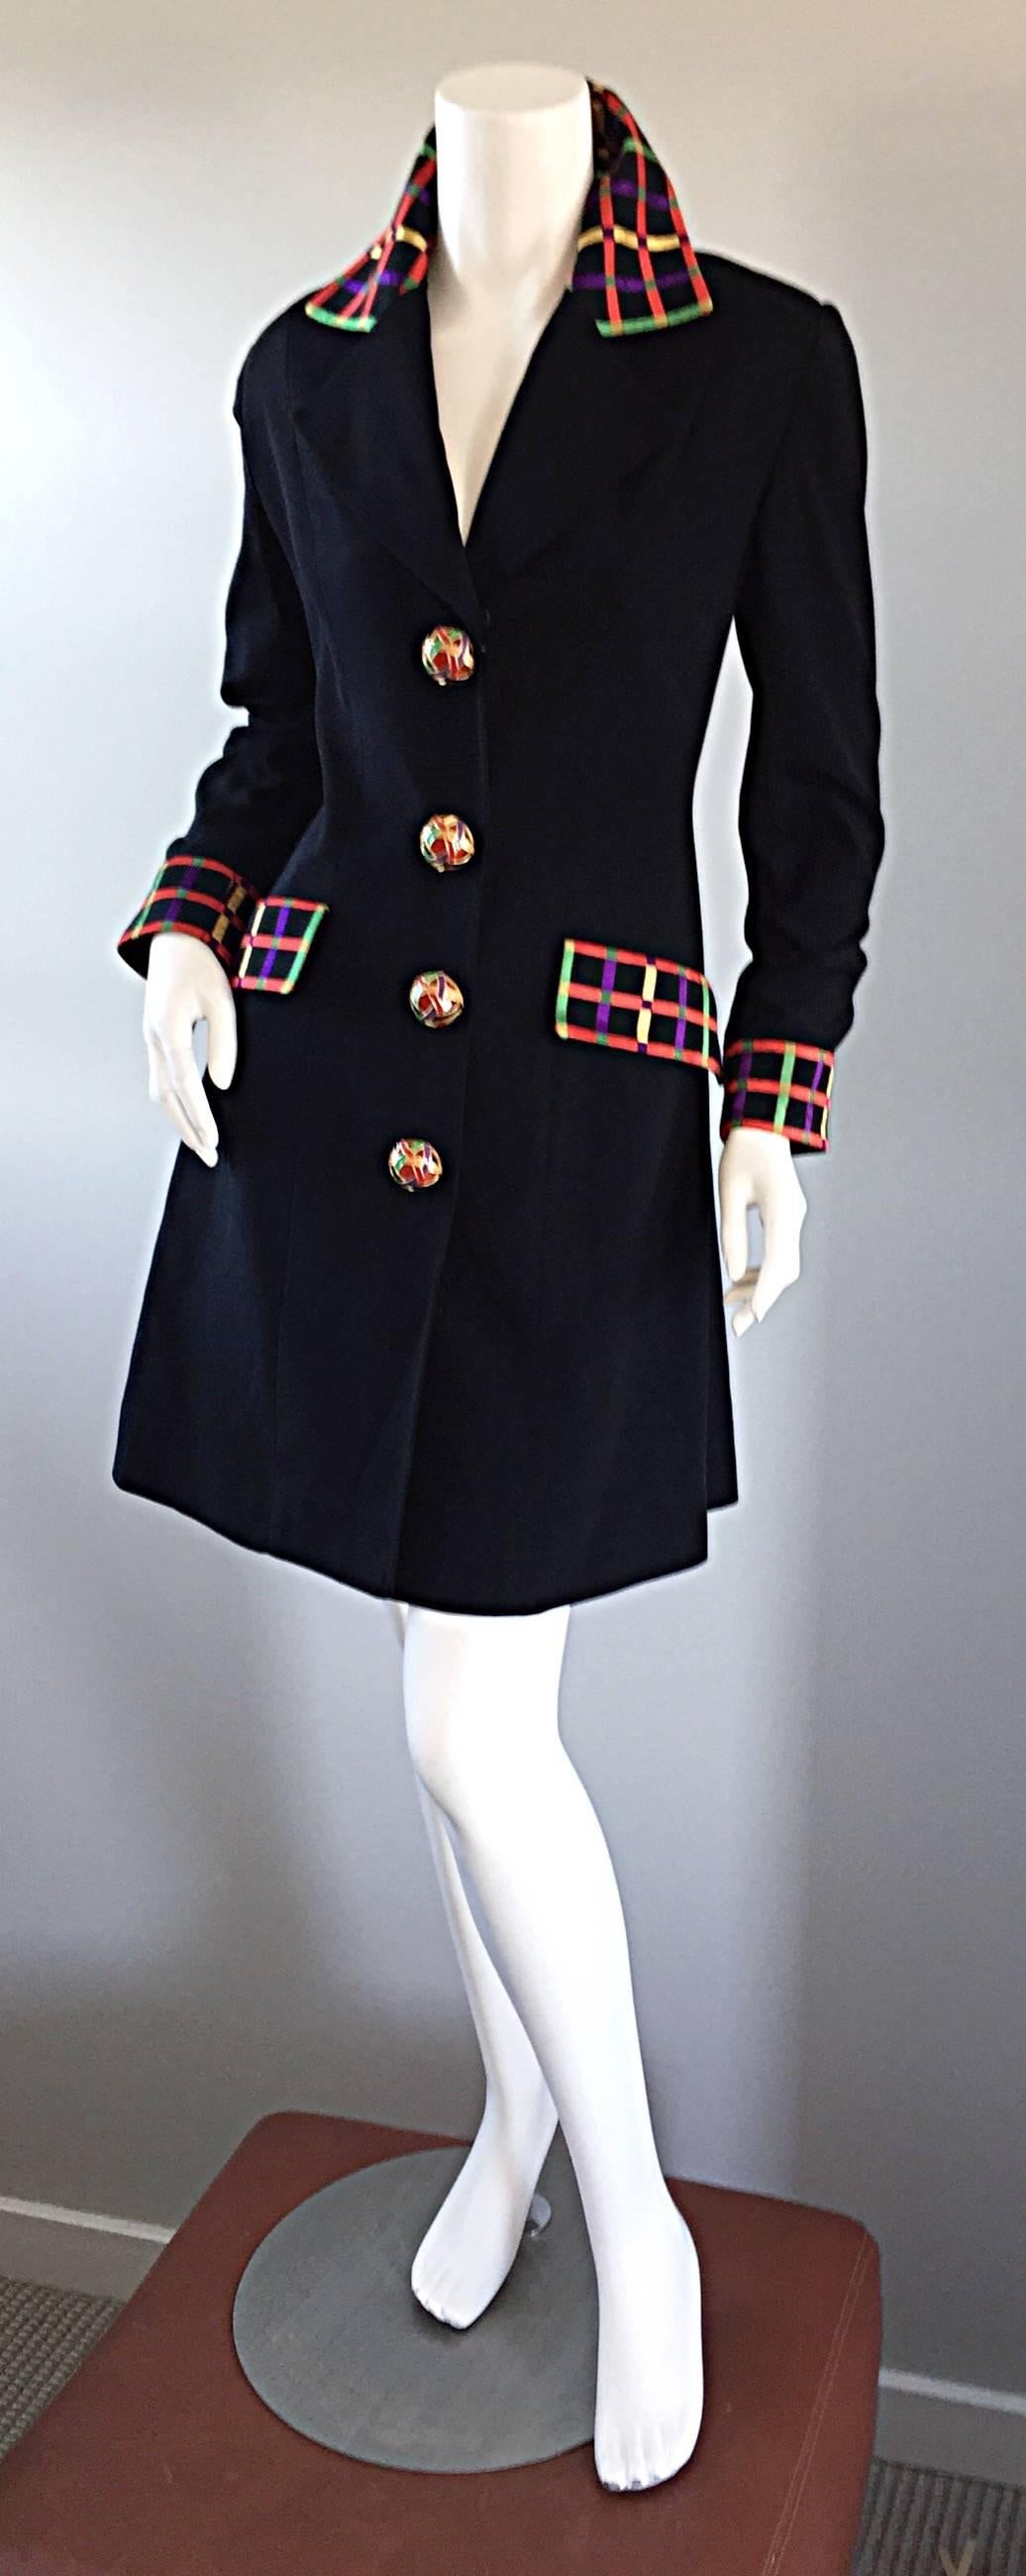 Women's Vintage Kathryn Dianos Black Jacket Dress w/ Plaid Details + Dome Buttons